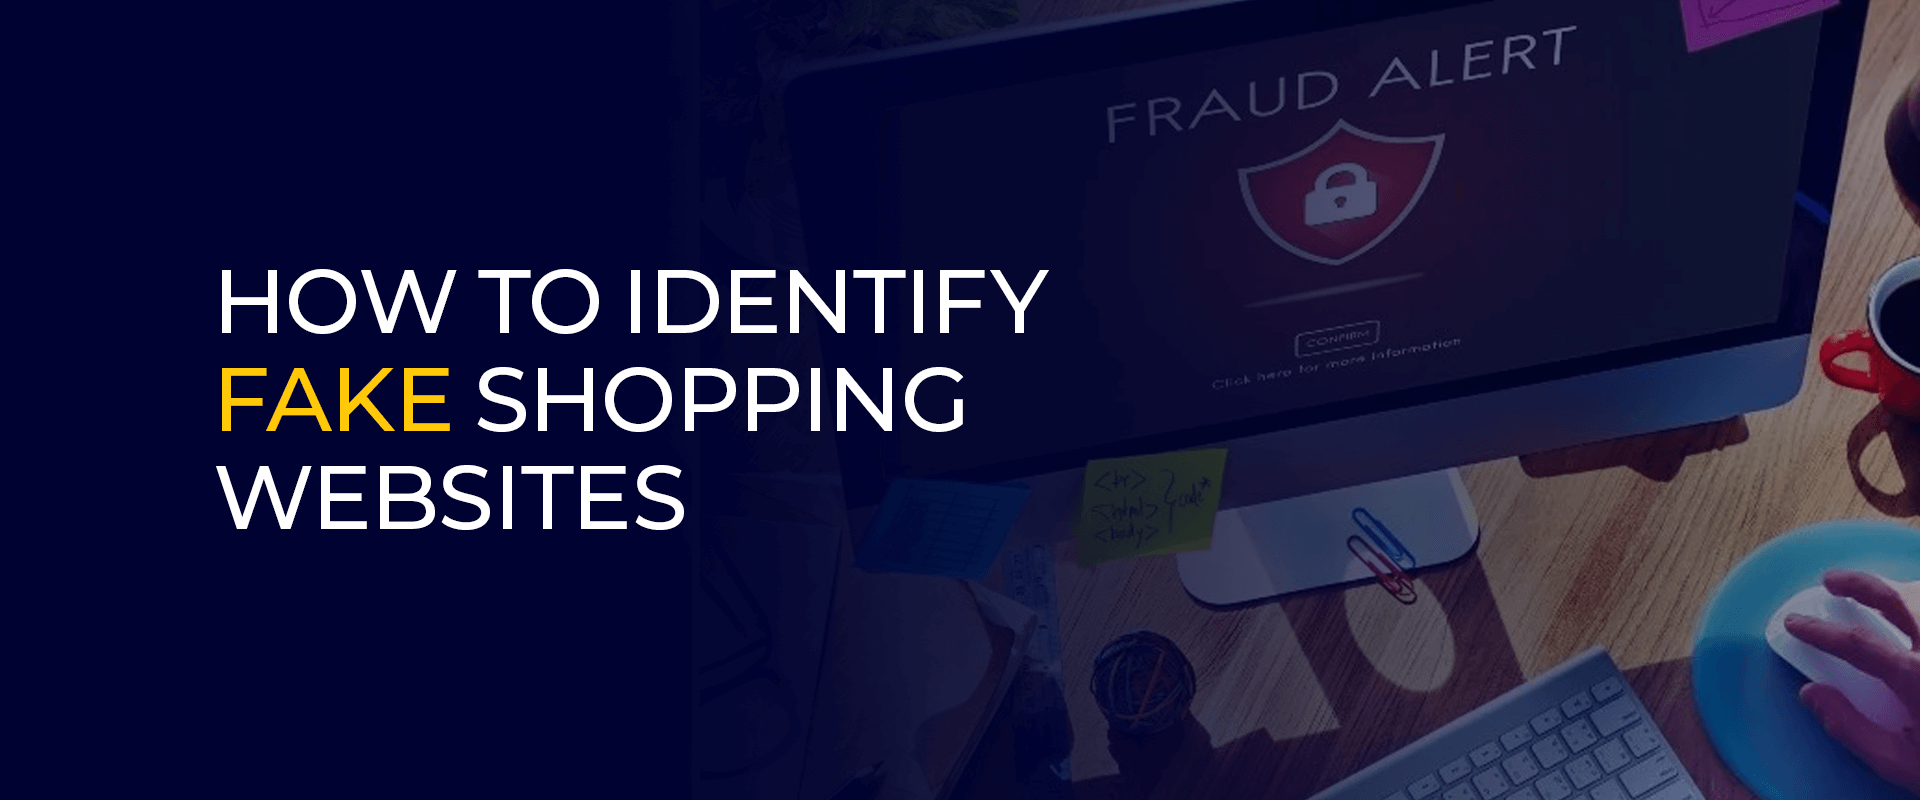 Hur man identifierar falska shoppingwebbplatser